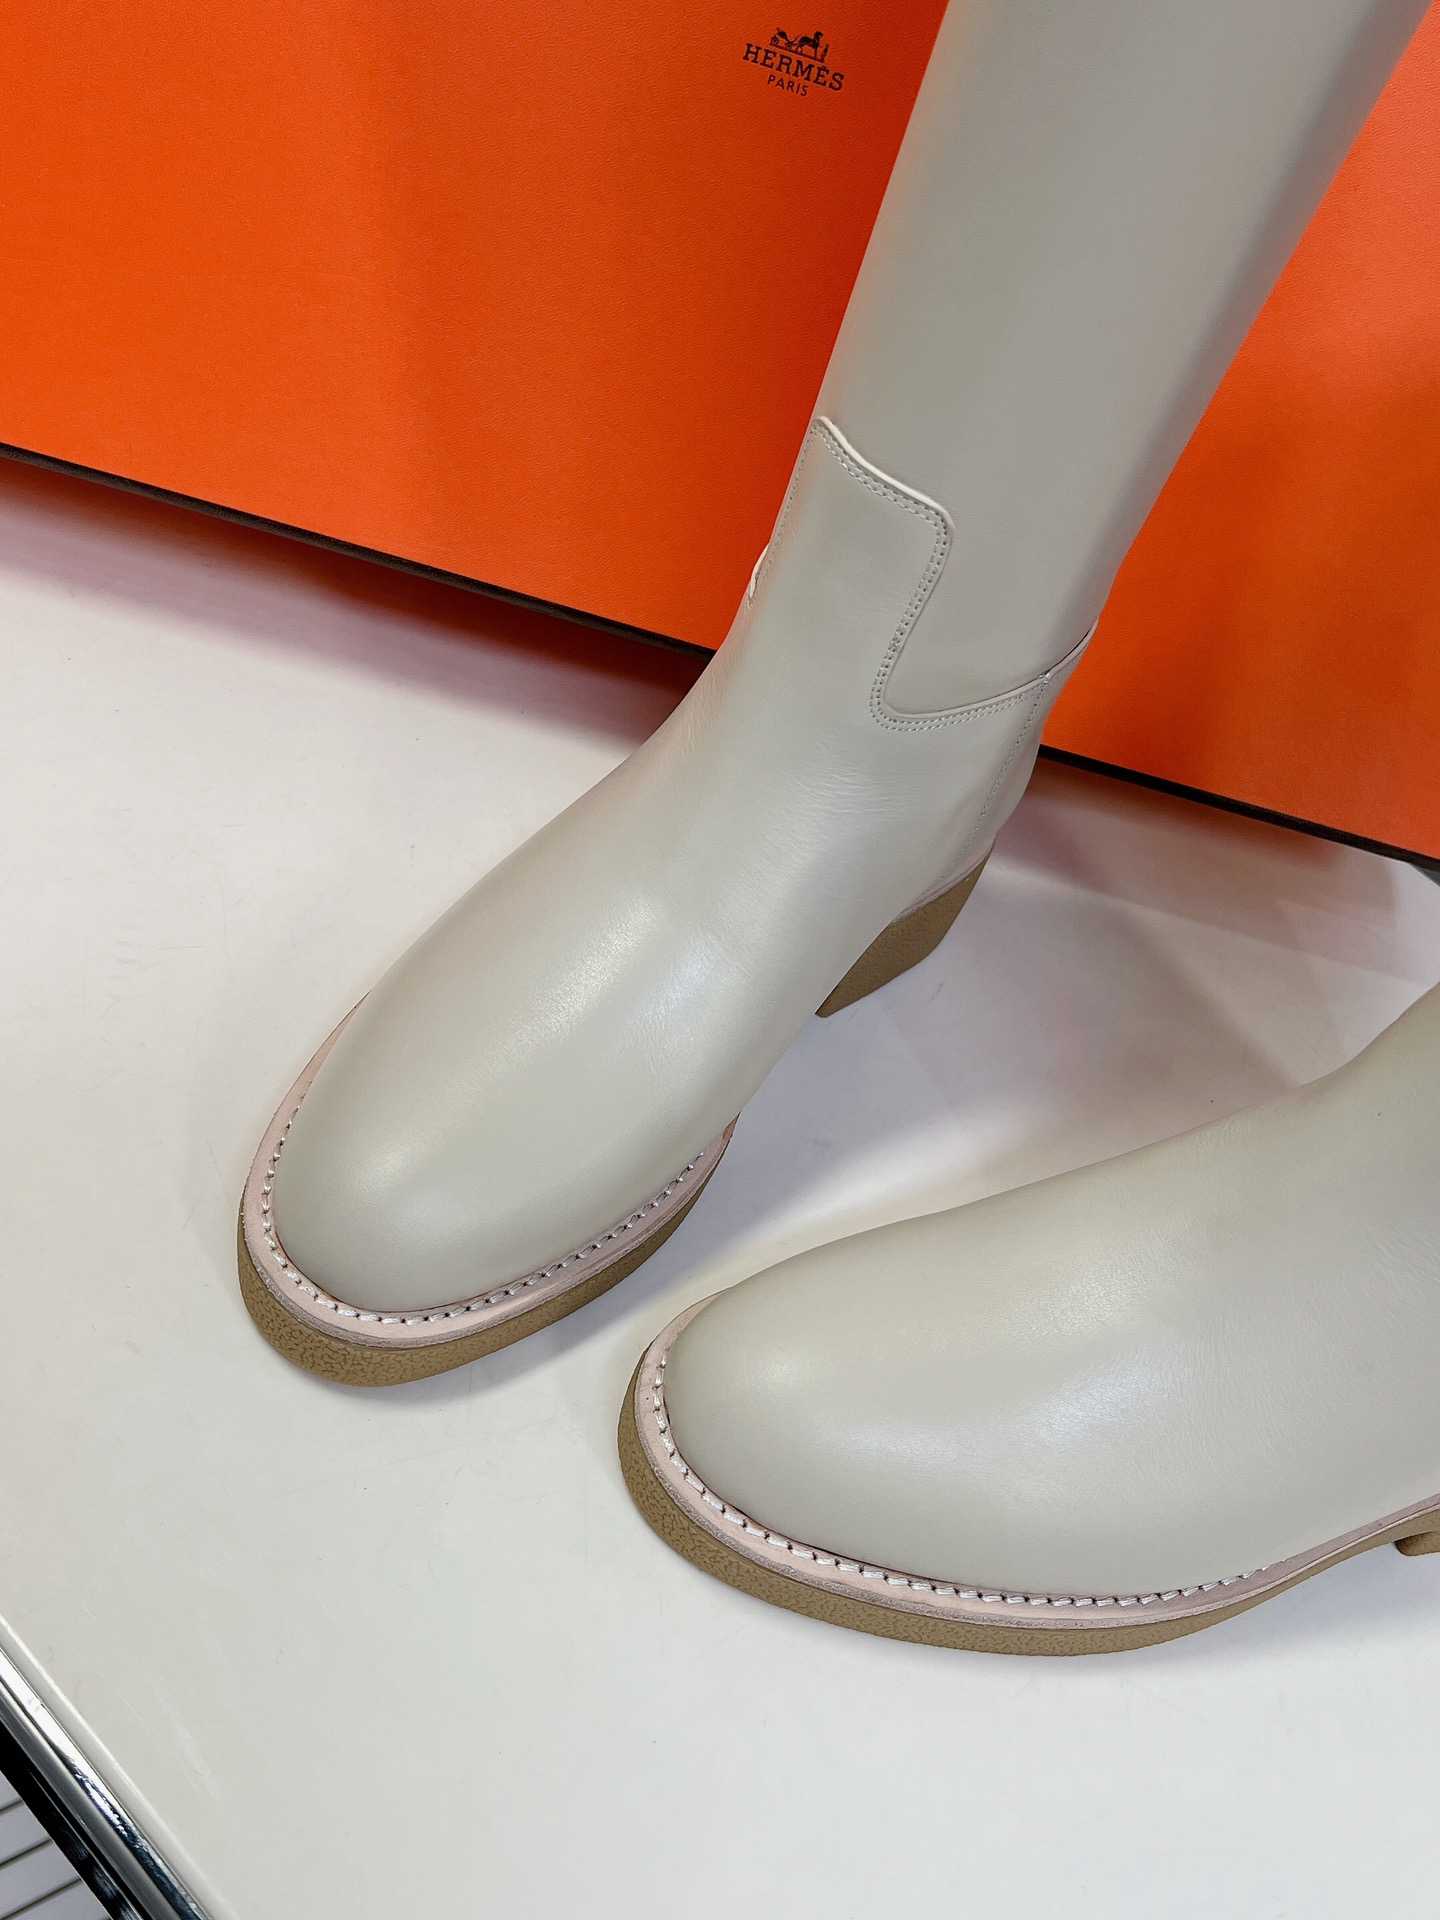 顶级代购版HERMES爱马仕kelly骑士靴偏休闲的一个新款跟鞋头部分撞色鞋面是定制麻布料历经1个多月研